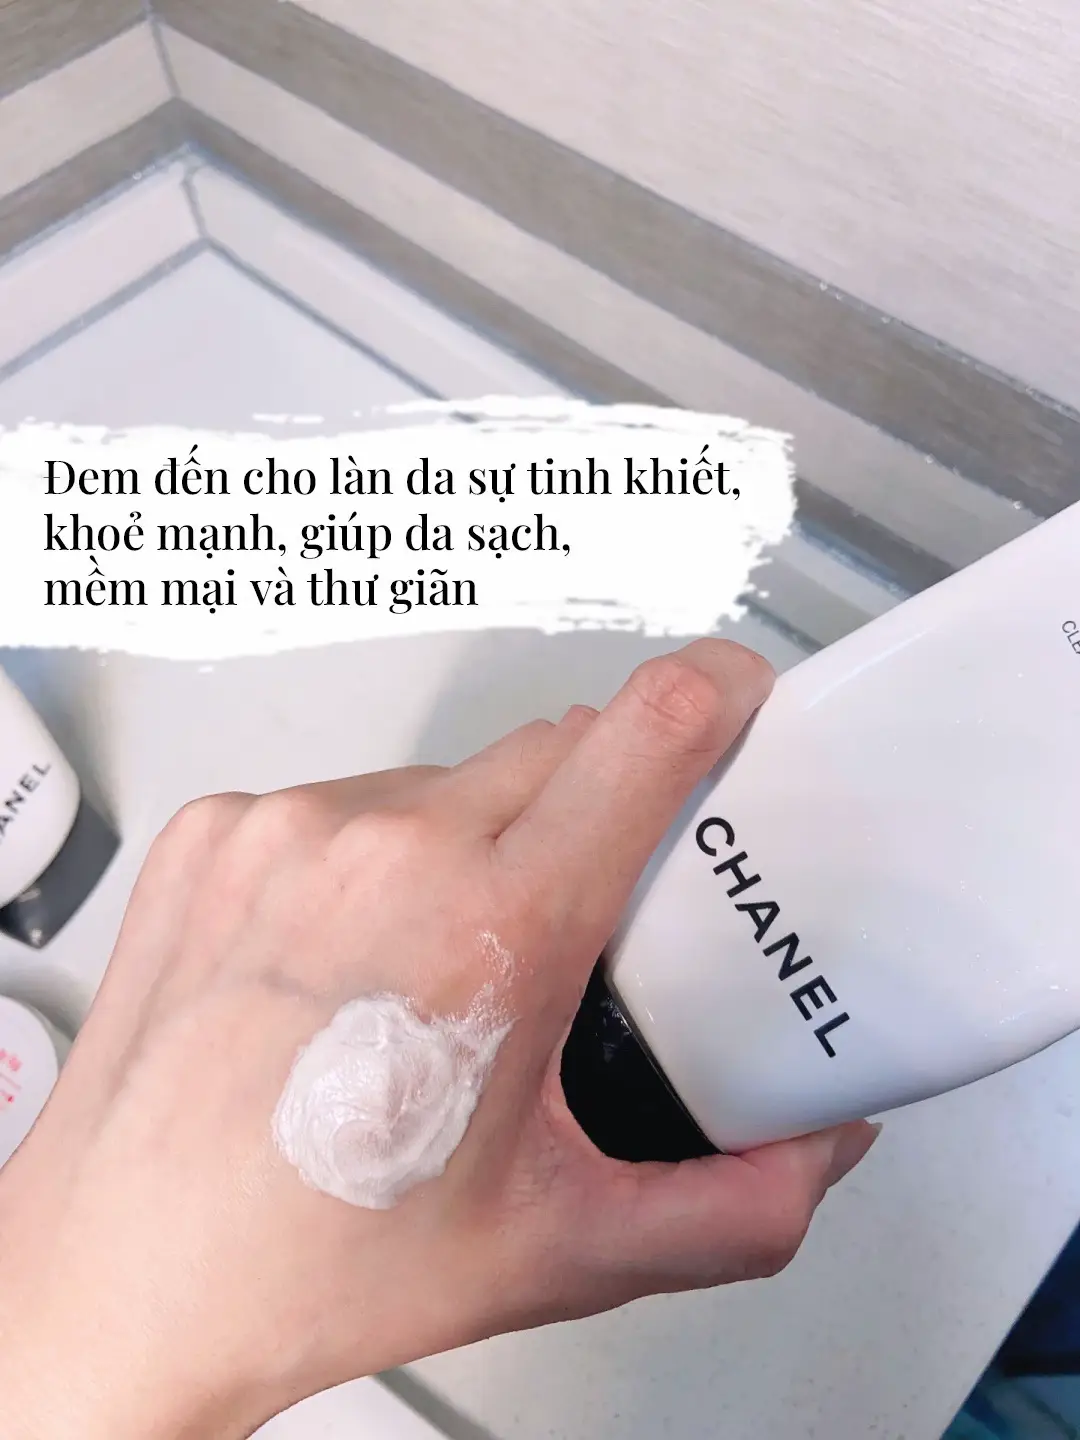 Chanel Le Blanc Mousse Nettoyante Foam Cleanser in 2023